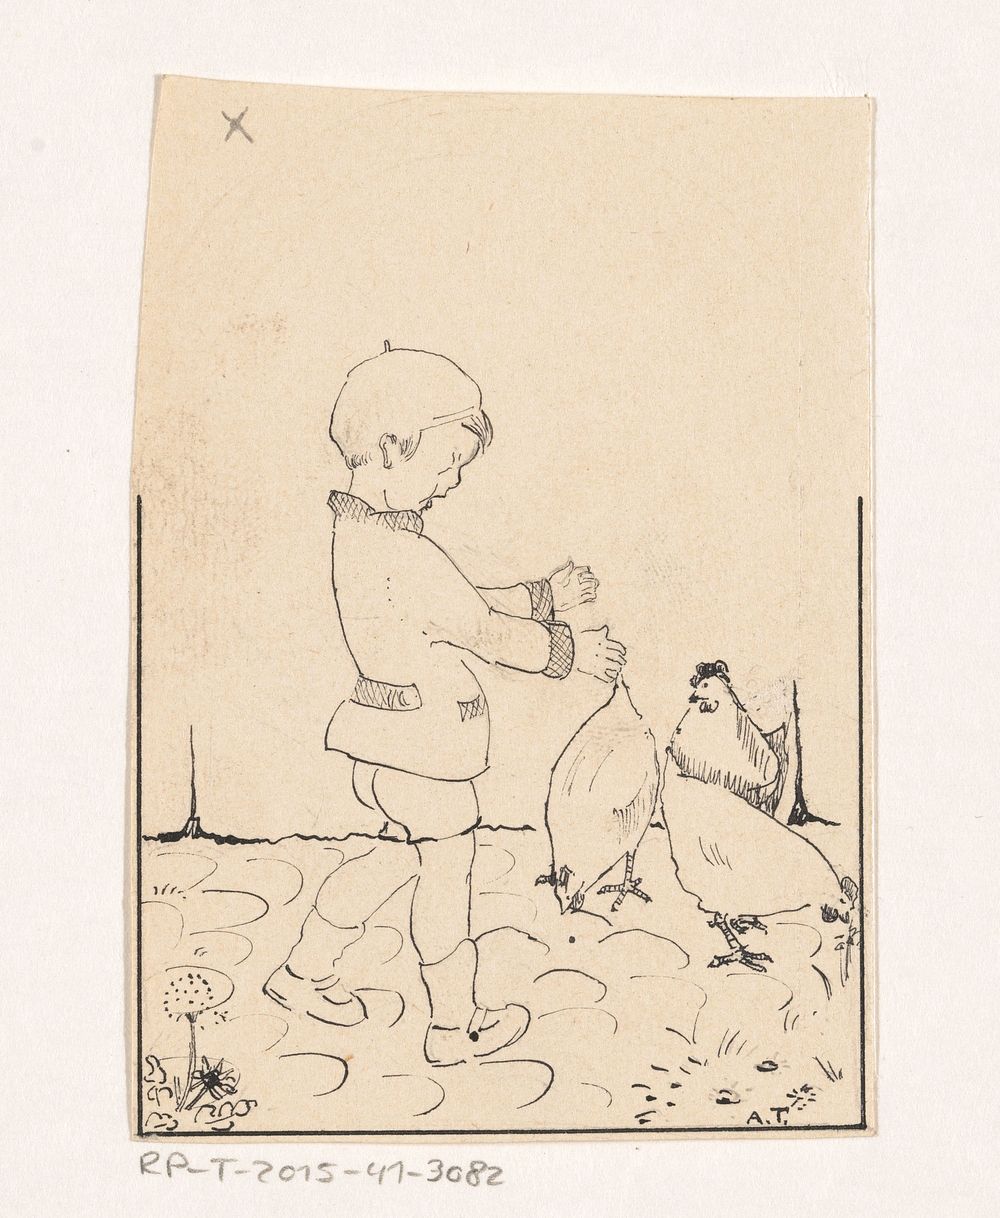 Jongen tussen de kippen (c. 1925 - c. 1935) by A Tinbergen